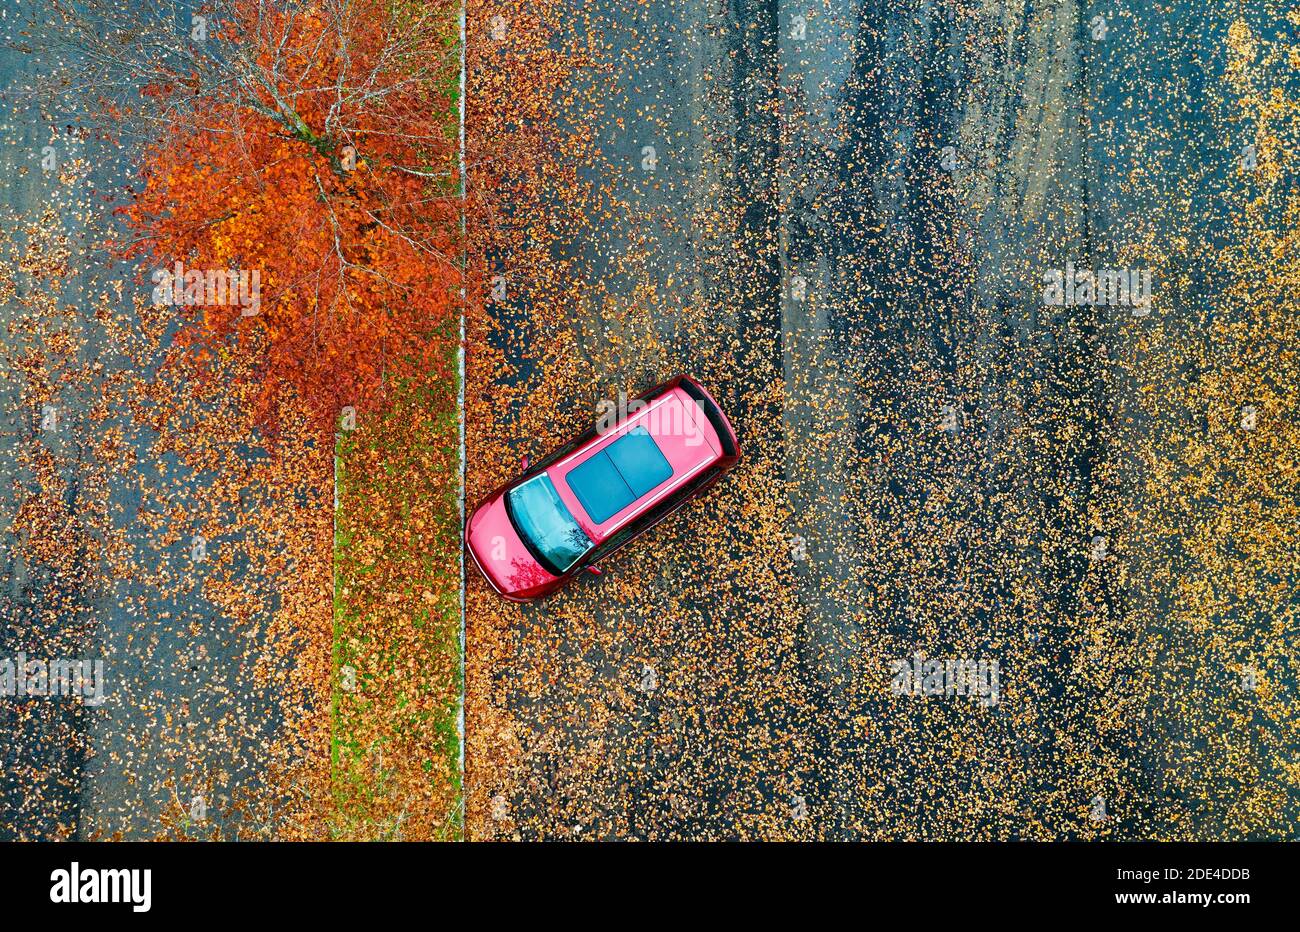 Monovoiture au parking avec arbres à feuilles caduques colorés, d'en haut, tir de drone, vue aérienne, Mondseeland, Salzkammergut, haute-Autriche, Autriche Banque D'Images